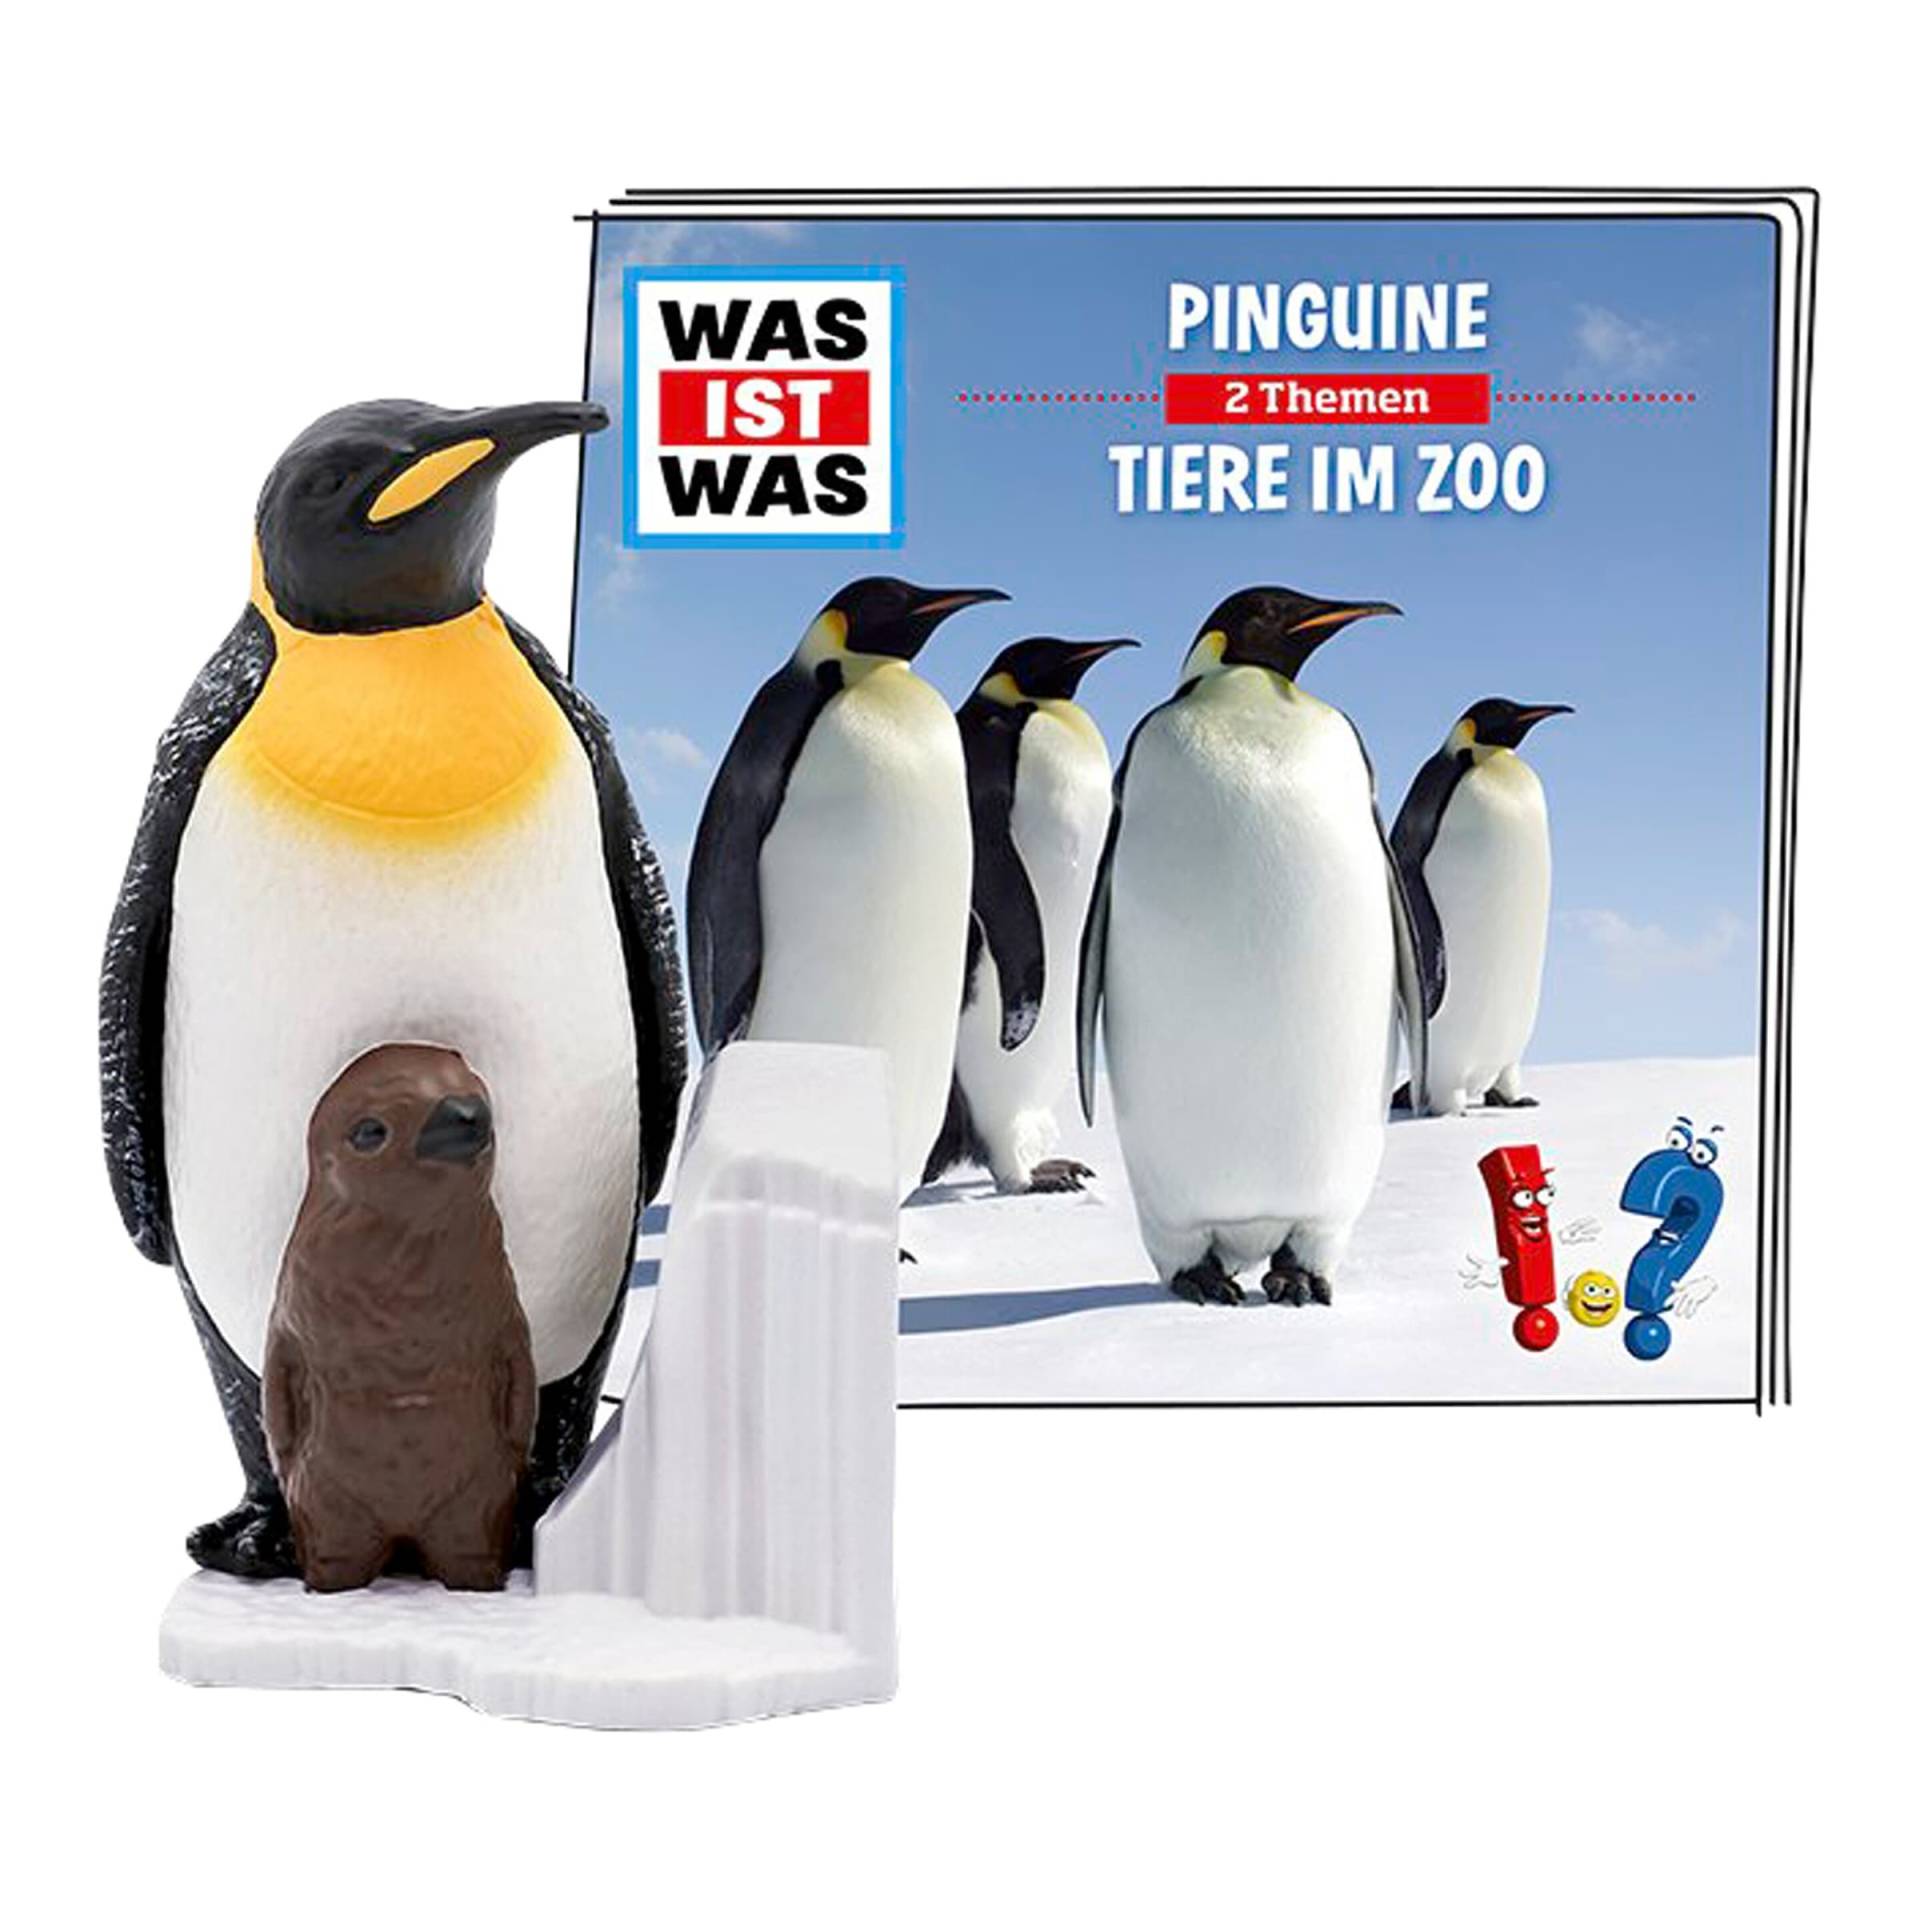 Tonies Tonie Hörfigur WAS IST WAS - Pinguine / Tiere im Zoo von tonies